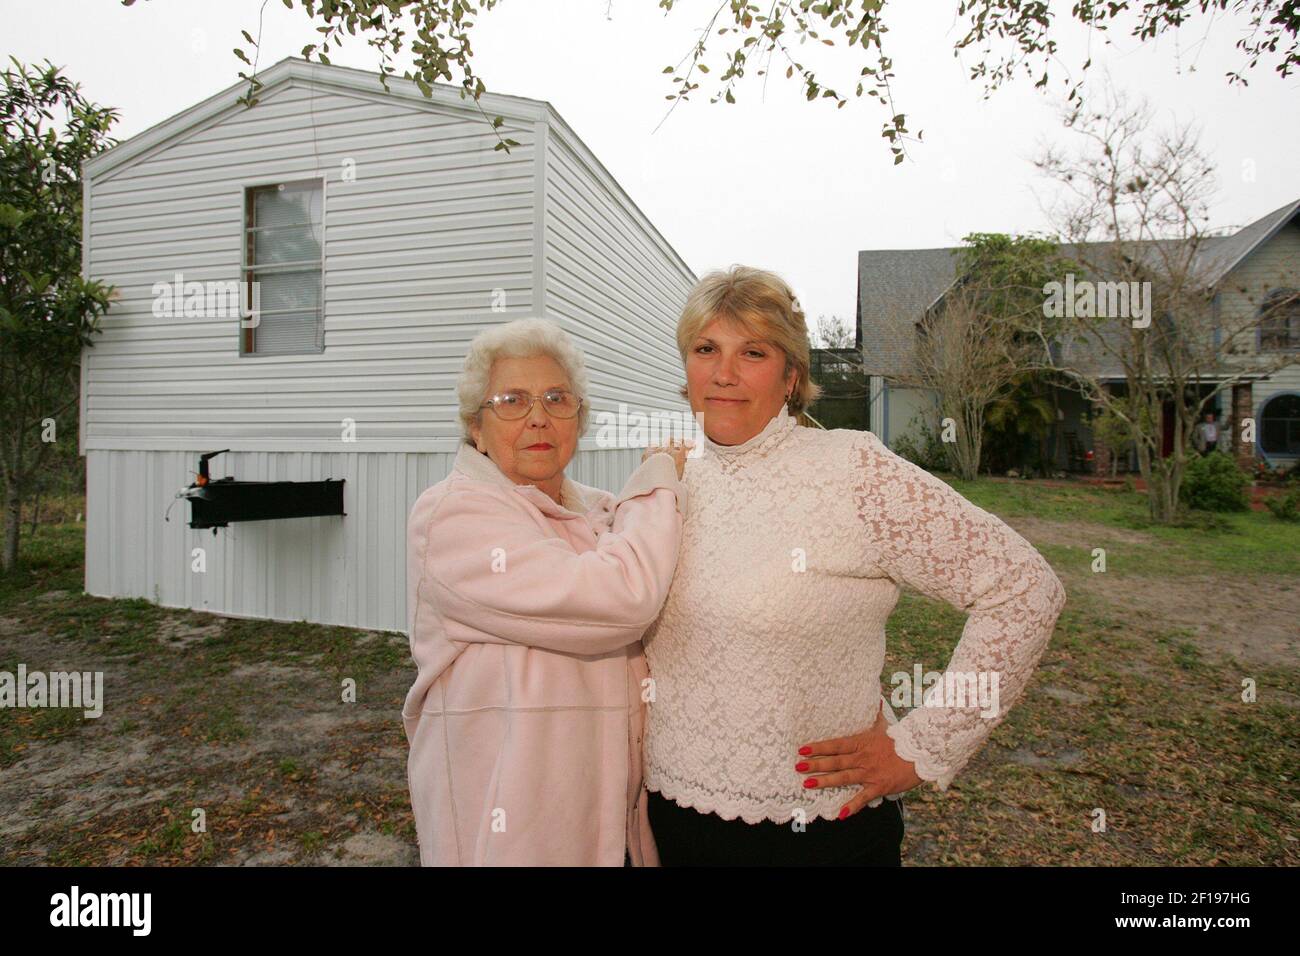 KRT US NEWS STORY SLUGED: IDTHEFT KRT FOTOGRAFÍA POR GARY BOGDON/KRT (marzo de 9) COCOA, FL-- Cynthia Millwood, izquierda, y su hija Ruth Millwood Wilburn, derecha, en su casa en Cocoa, Florida, el 9 de marzo de 2005. Hace dos años, Wilburn y su madre tenían 15 cuentas de tarjetas de crédito abiertas en su nombre por los estafadores, y todavía están luchando para restaurar su crédito. (lde) 2005 Foto de stock